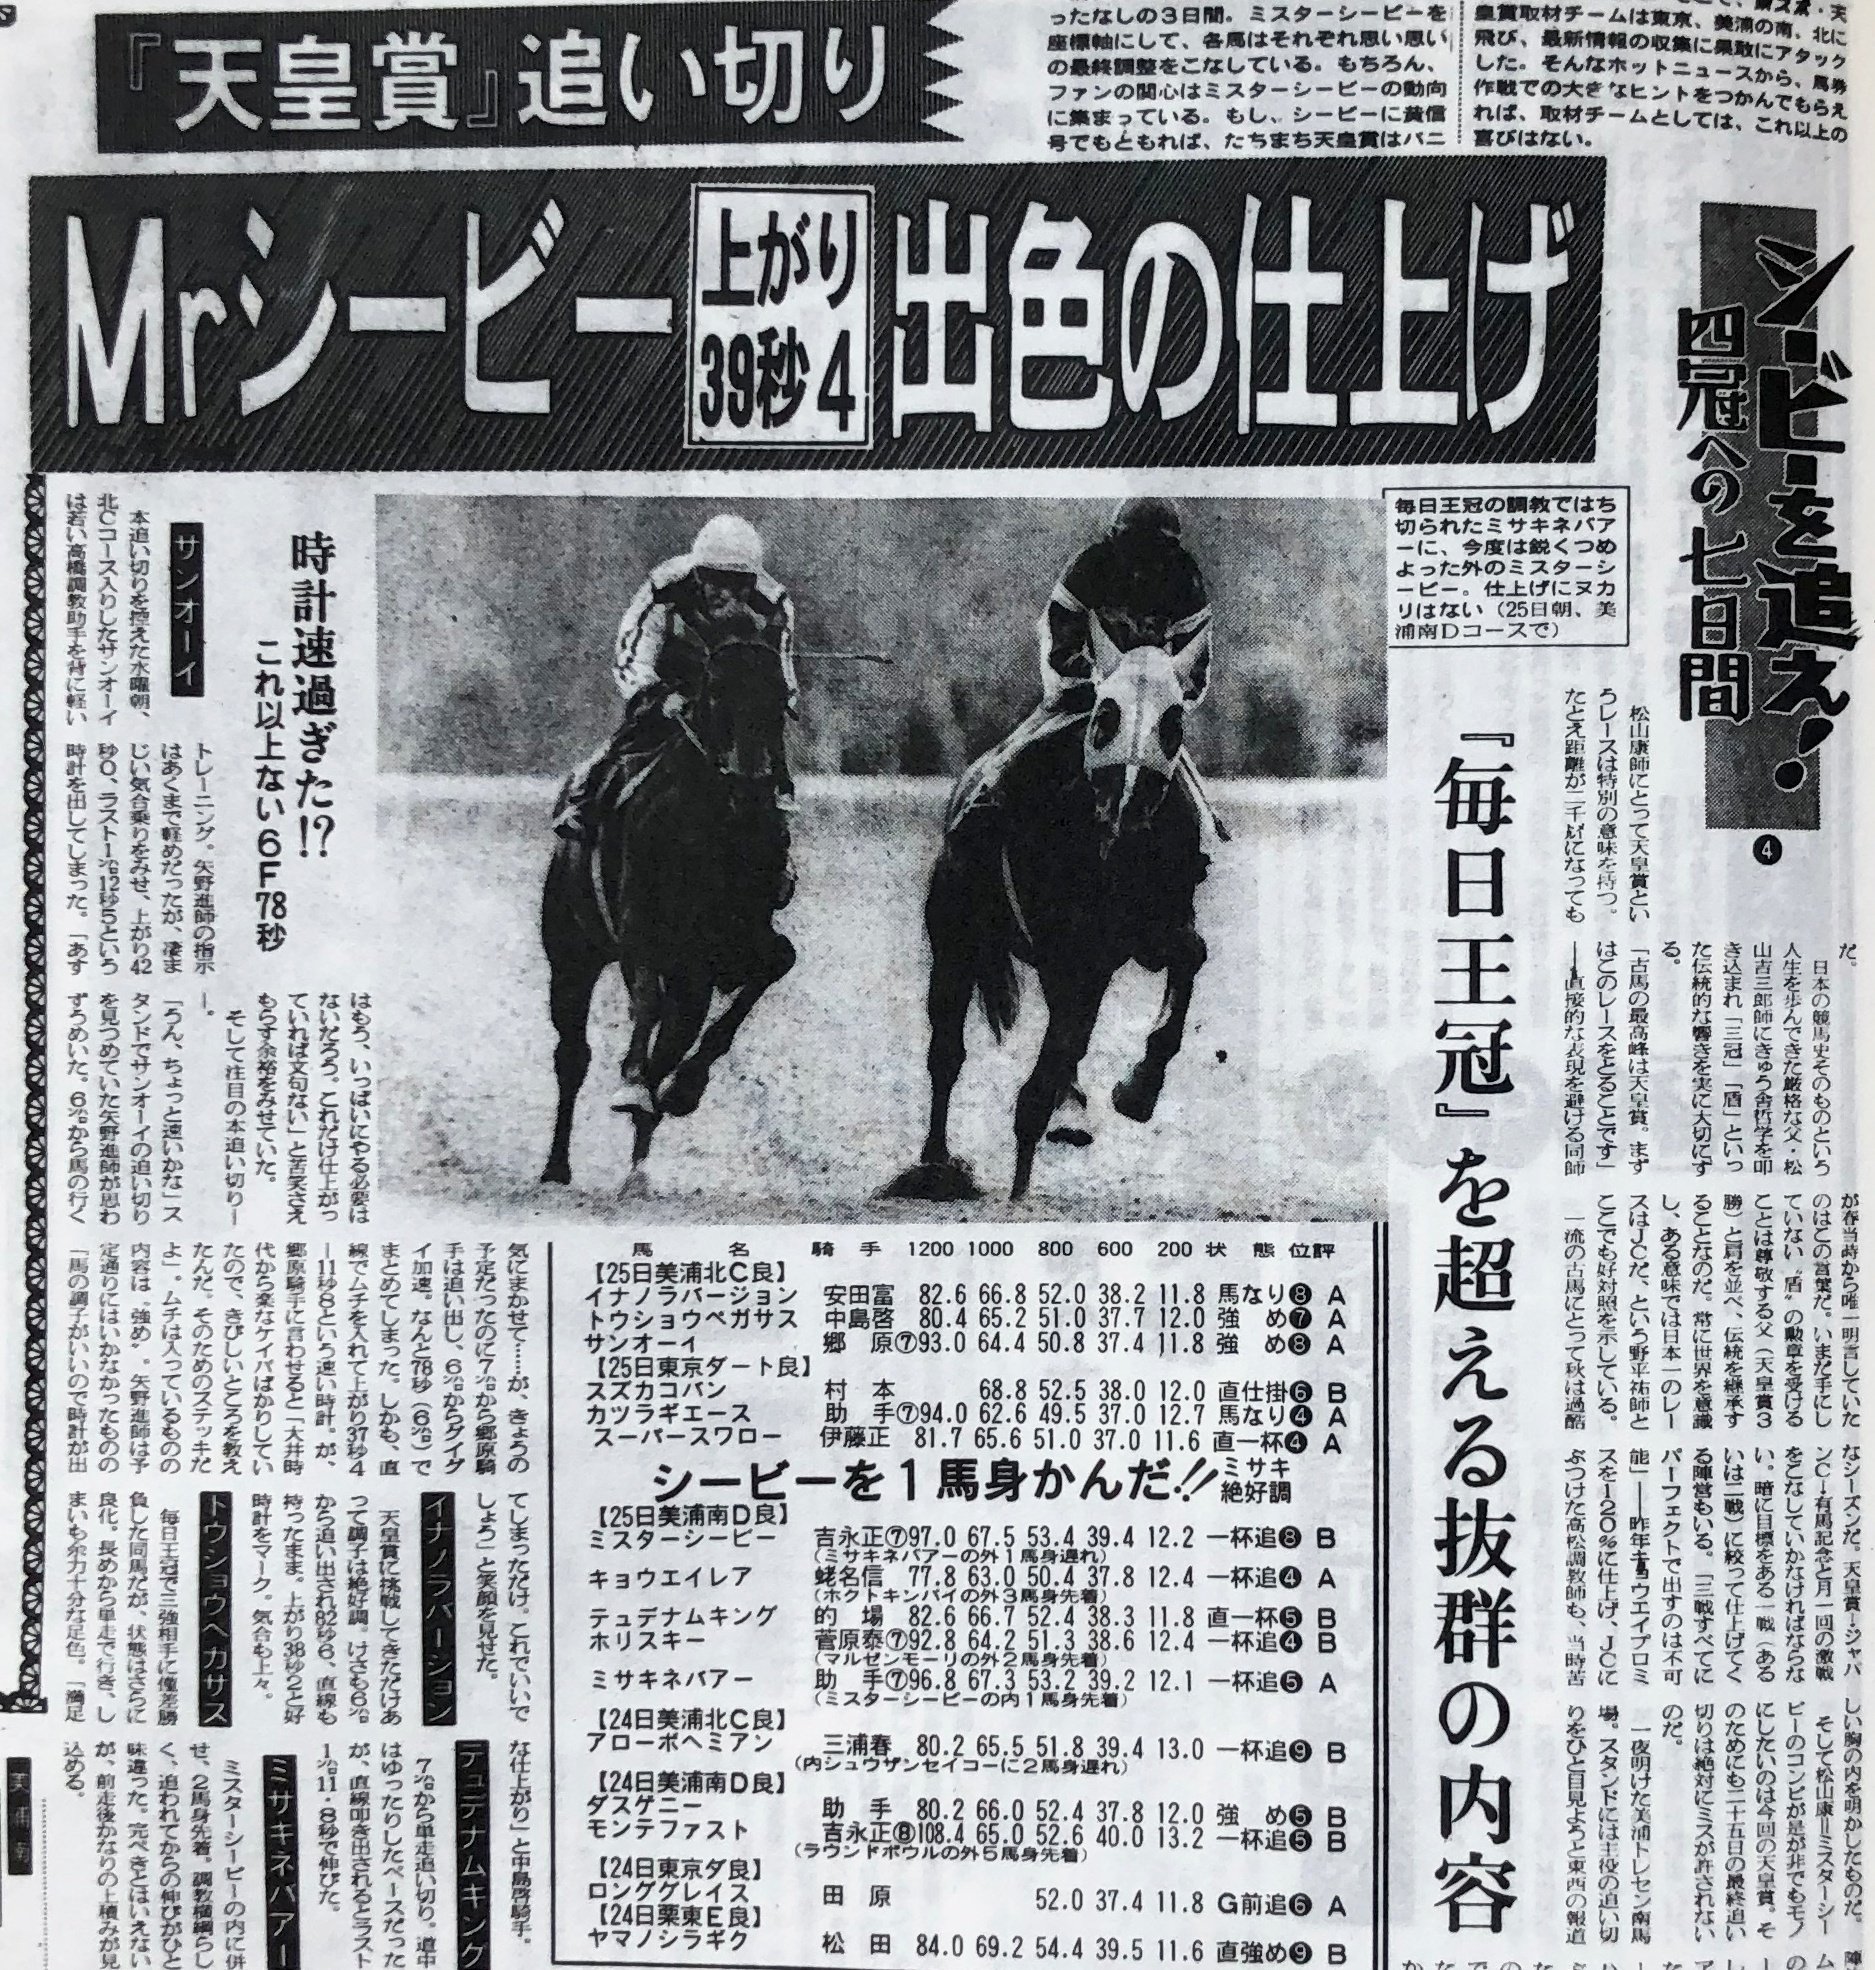 ミスターシービー号 三冠\u0026天皇賞秋、JC、有馬記念 競馬新聞 - www 